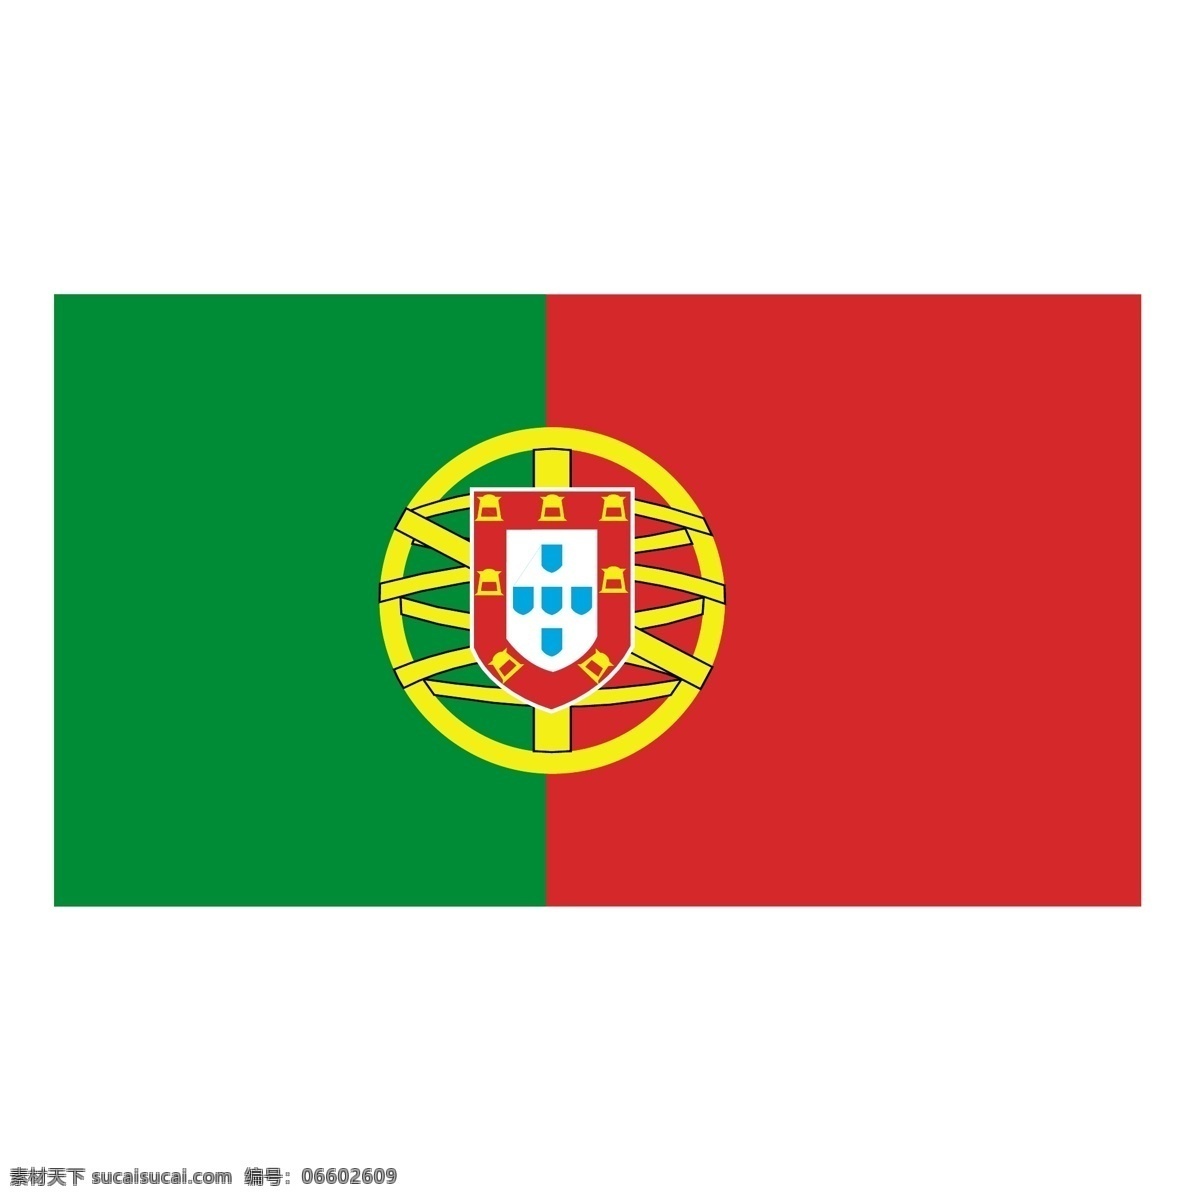 葡萄牙0 矢量艺术 葡萄牙 国旗 矢量 埃斯库多 免费 艺术 标志 夹 欧洲杯 2004 欧元 自由 赛车葡萄牙 向量 矢量图 建筑家居